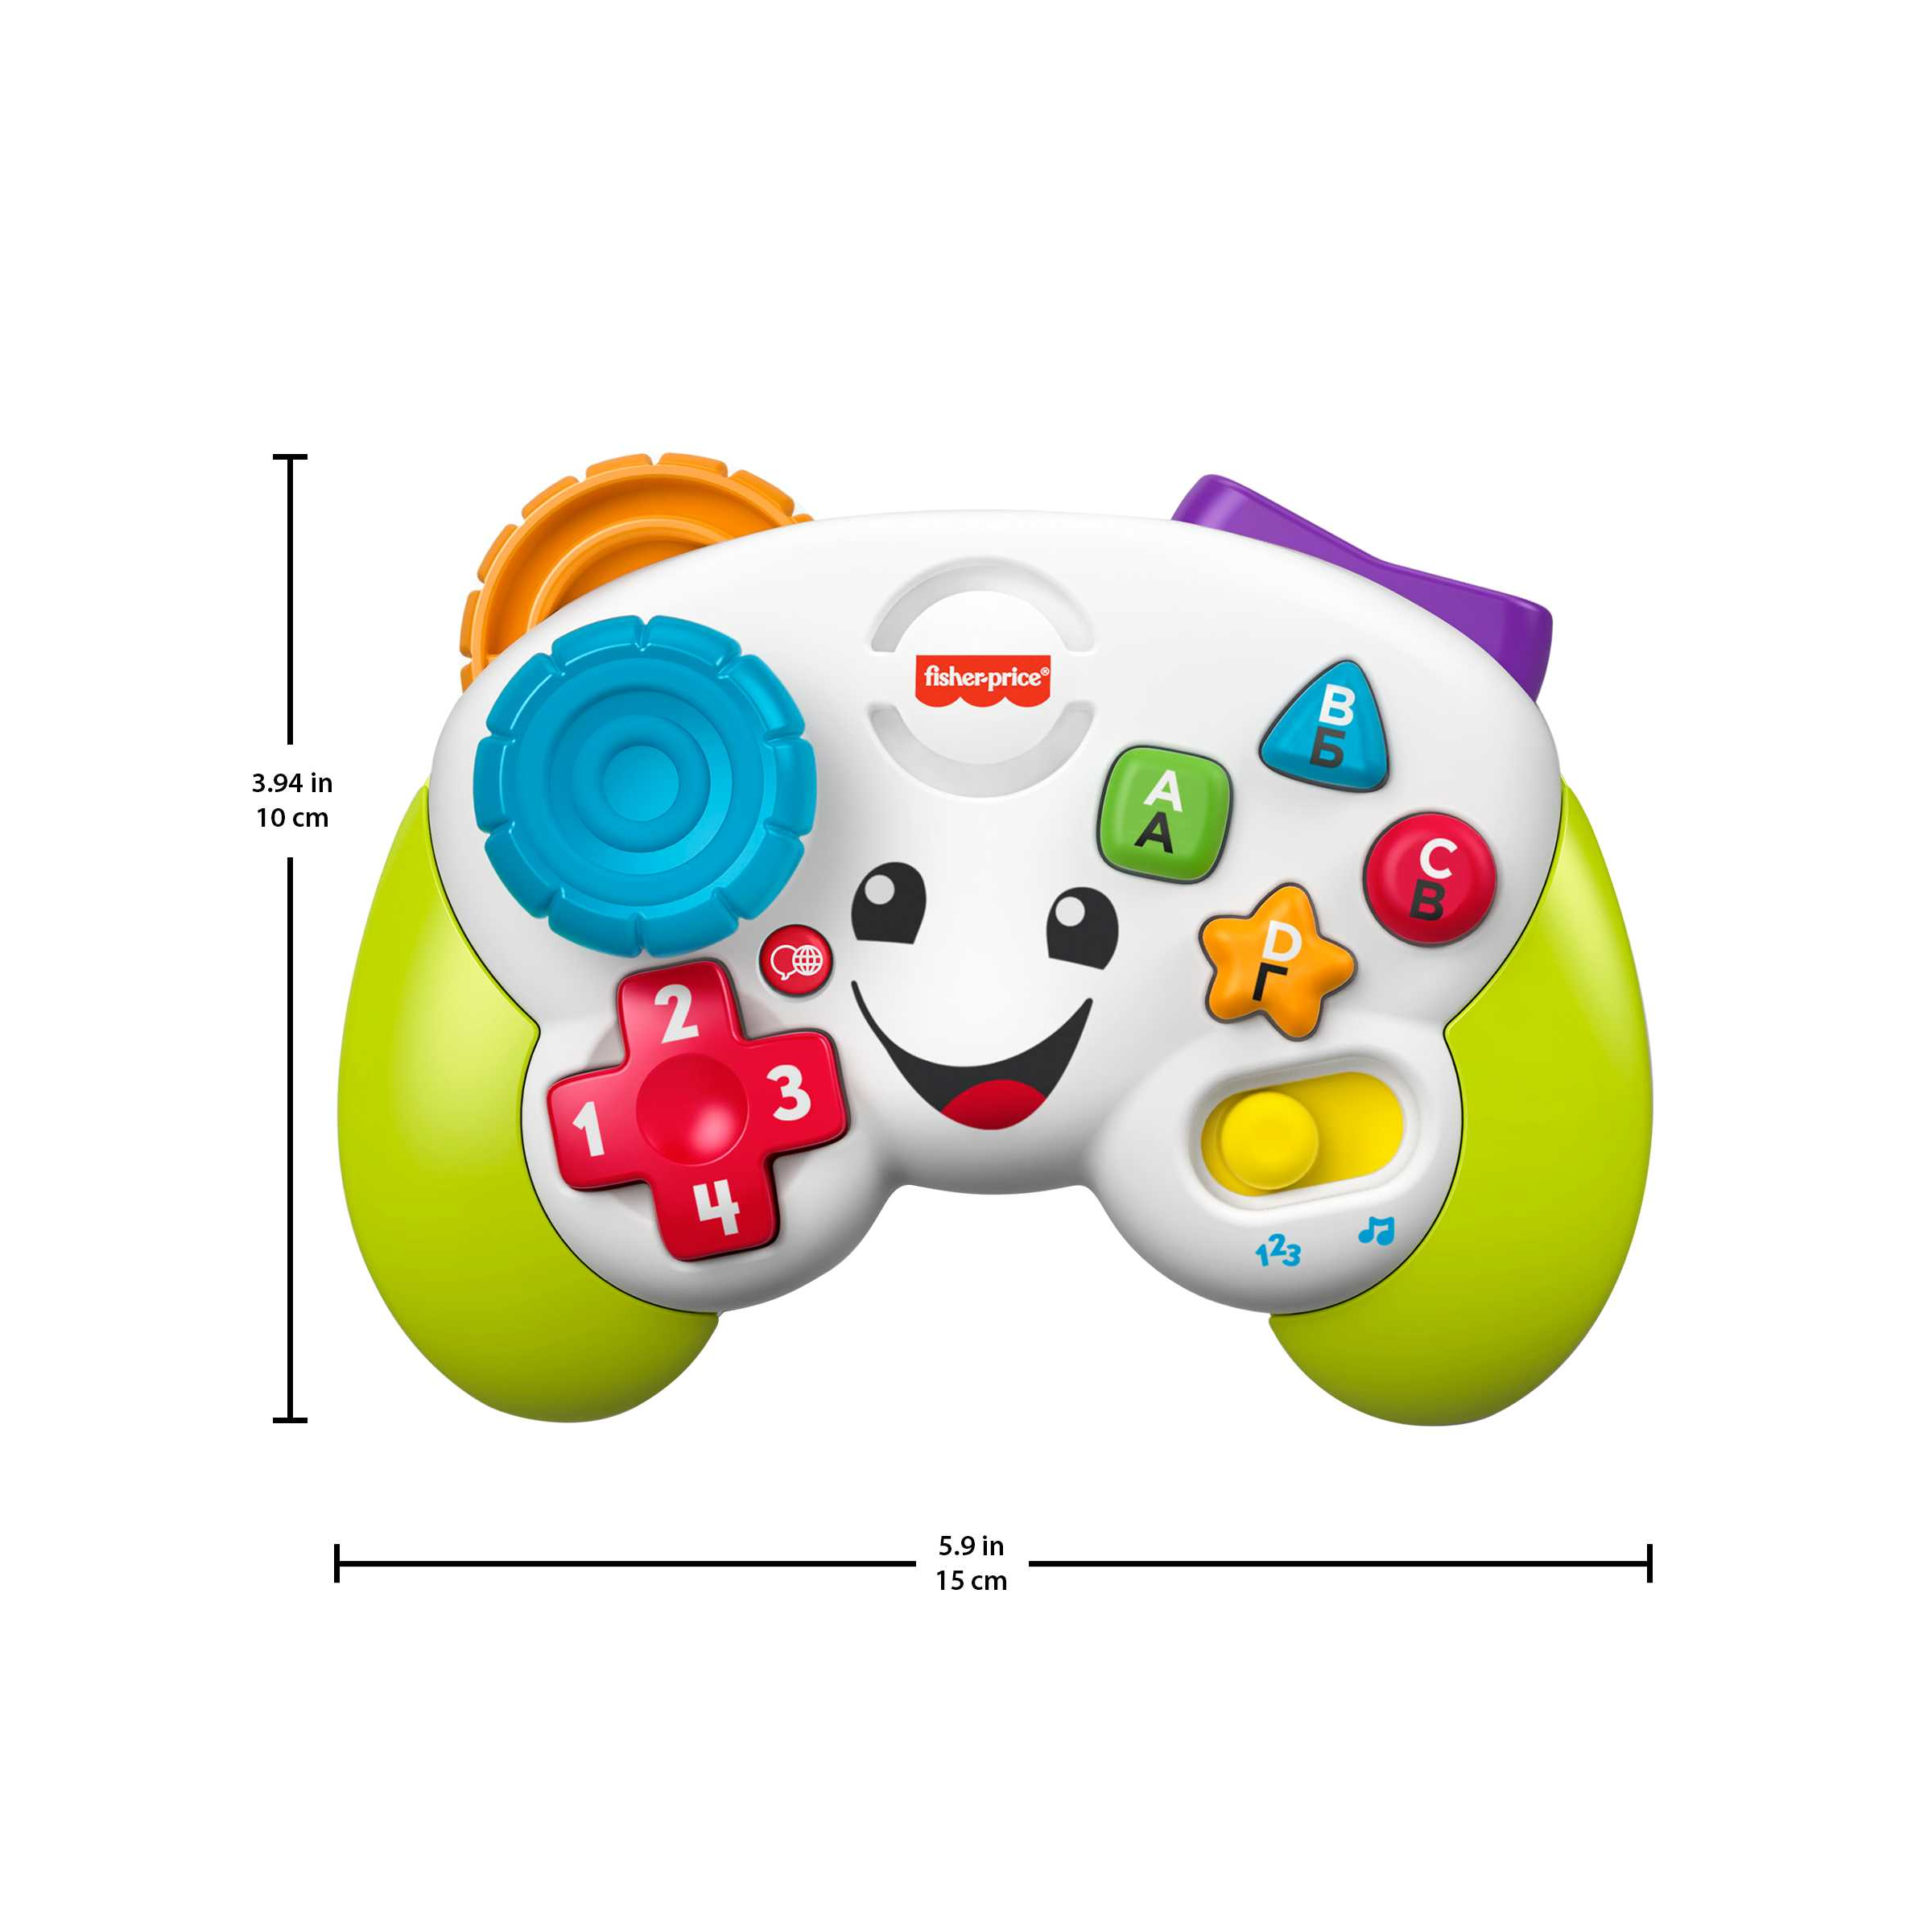 Fisher-price-controller gioca & impara ridi & impara - edizione multilingue, joystick giocattolo musicale per l'infanzia con luci e contenuti educativi, giocattolo per bambini 6+mesi, hhx11 - FISHER-PRICE